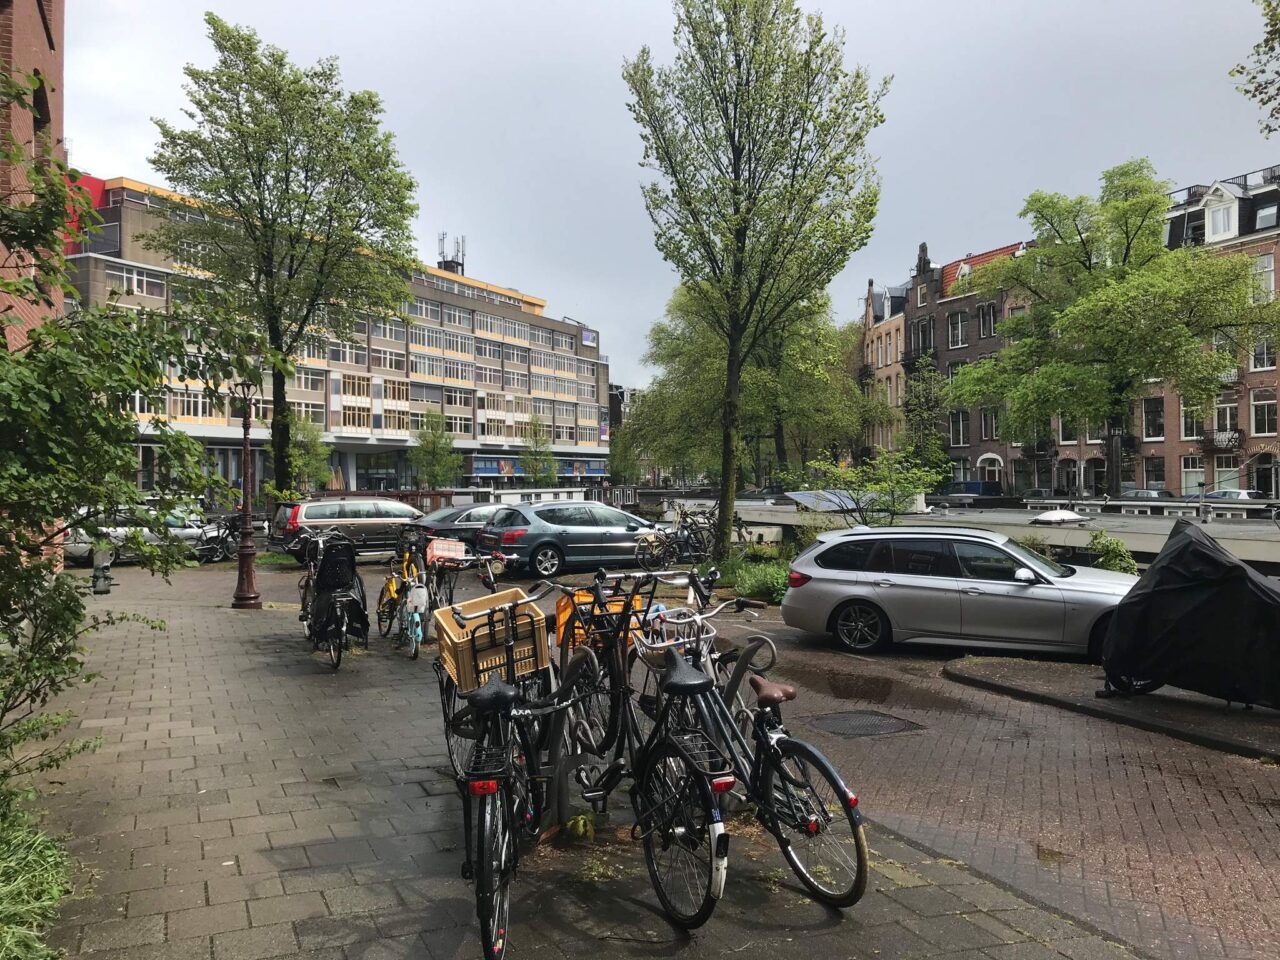 Da Costakade 4Huis, Amsterdam Amsterdam